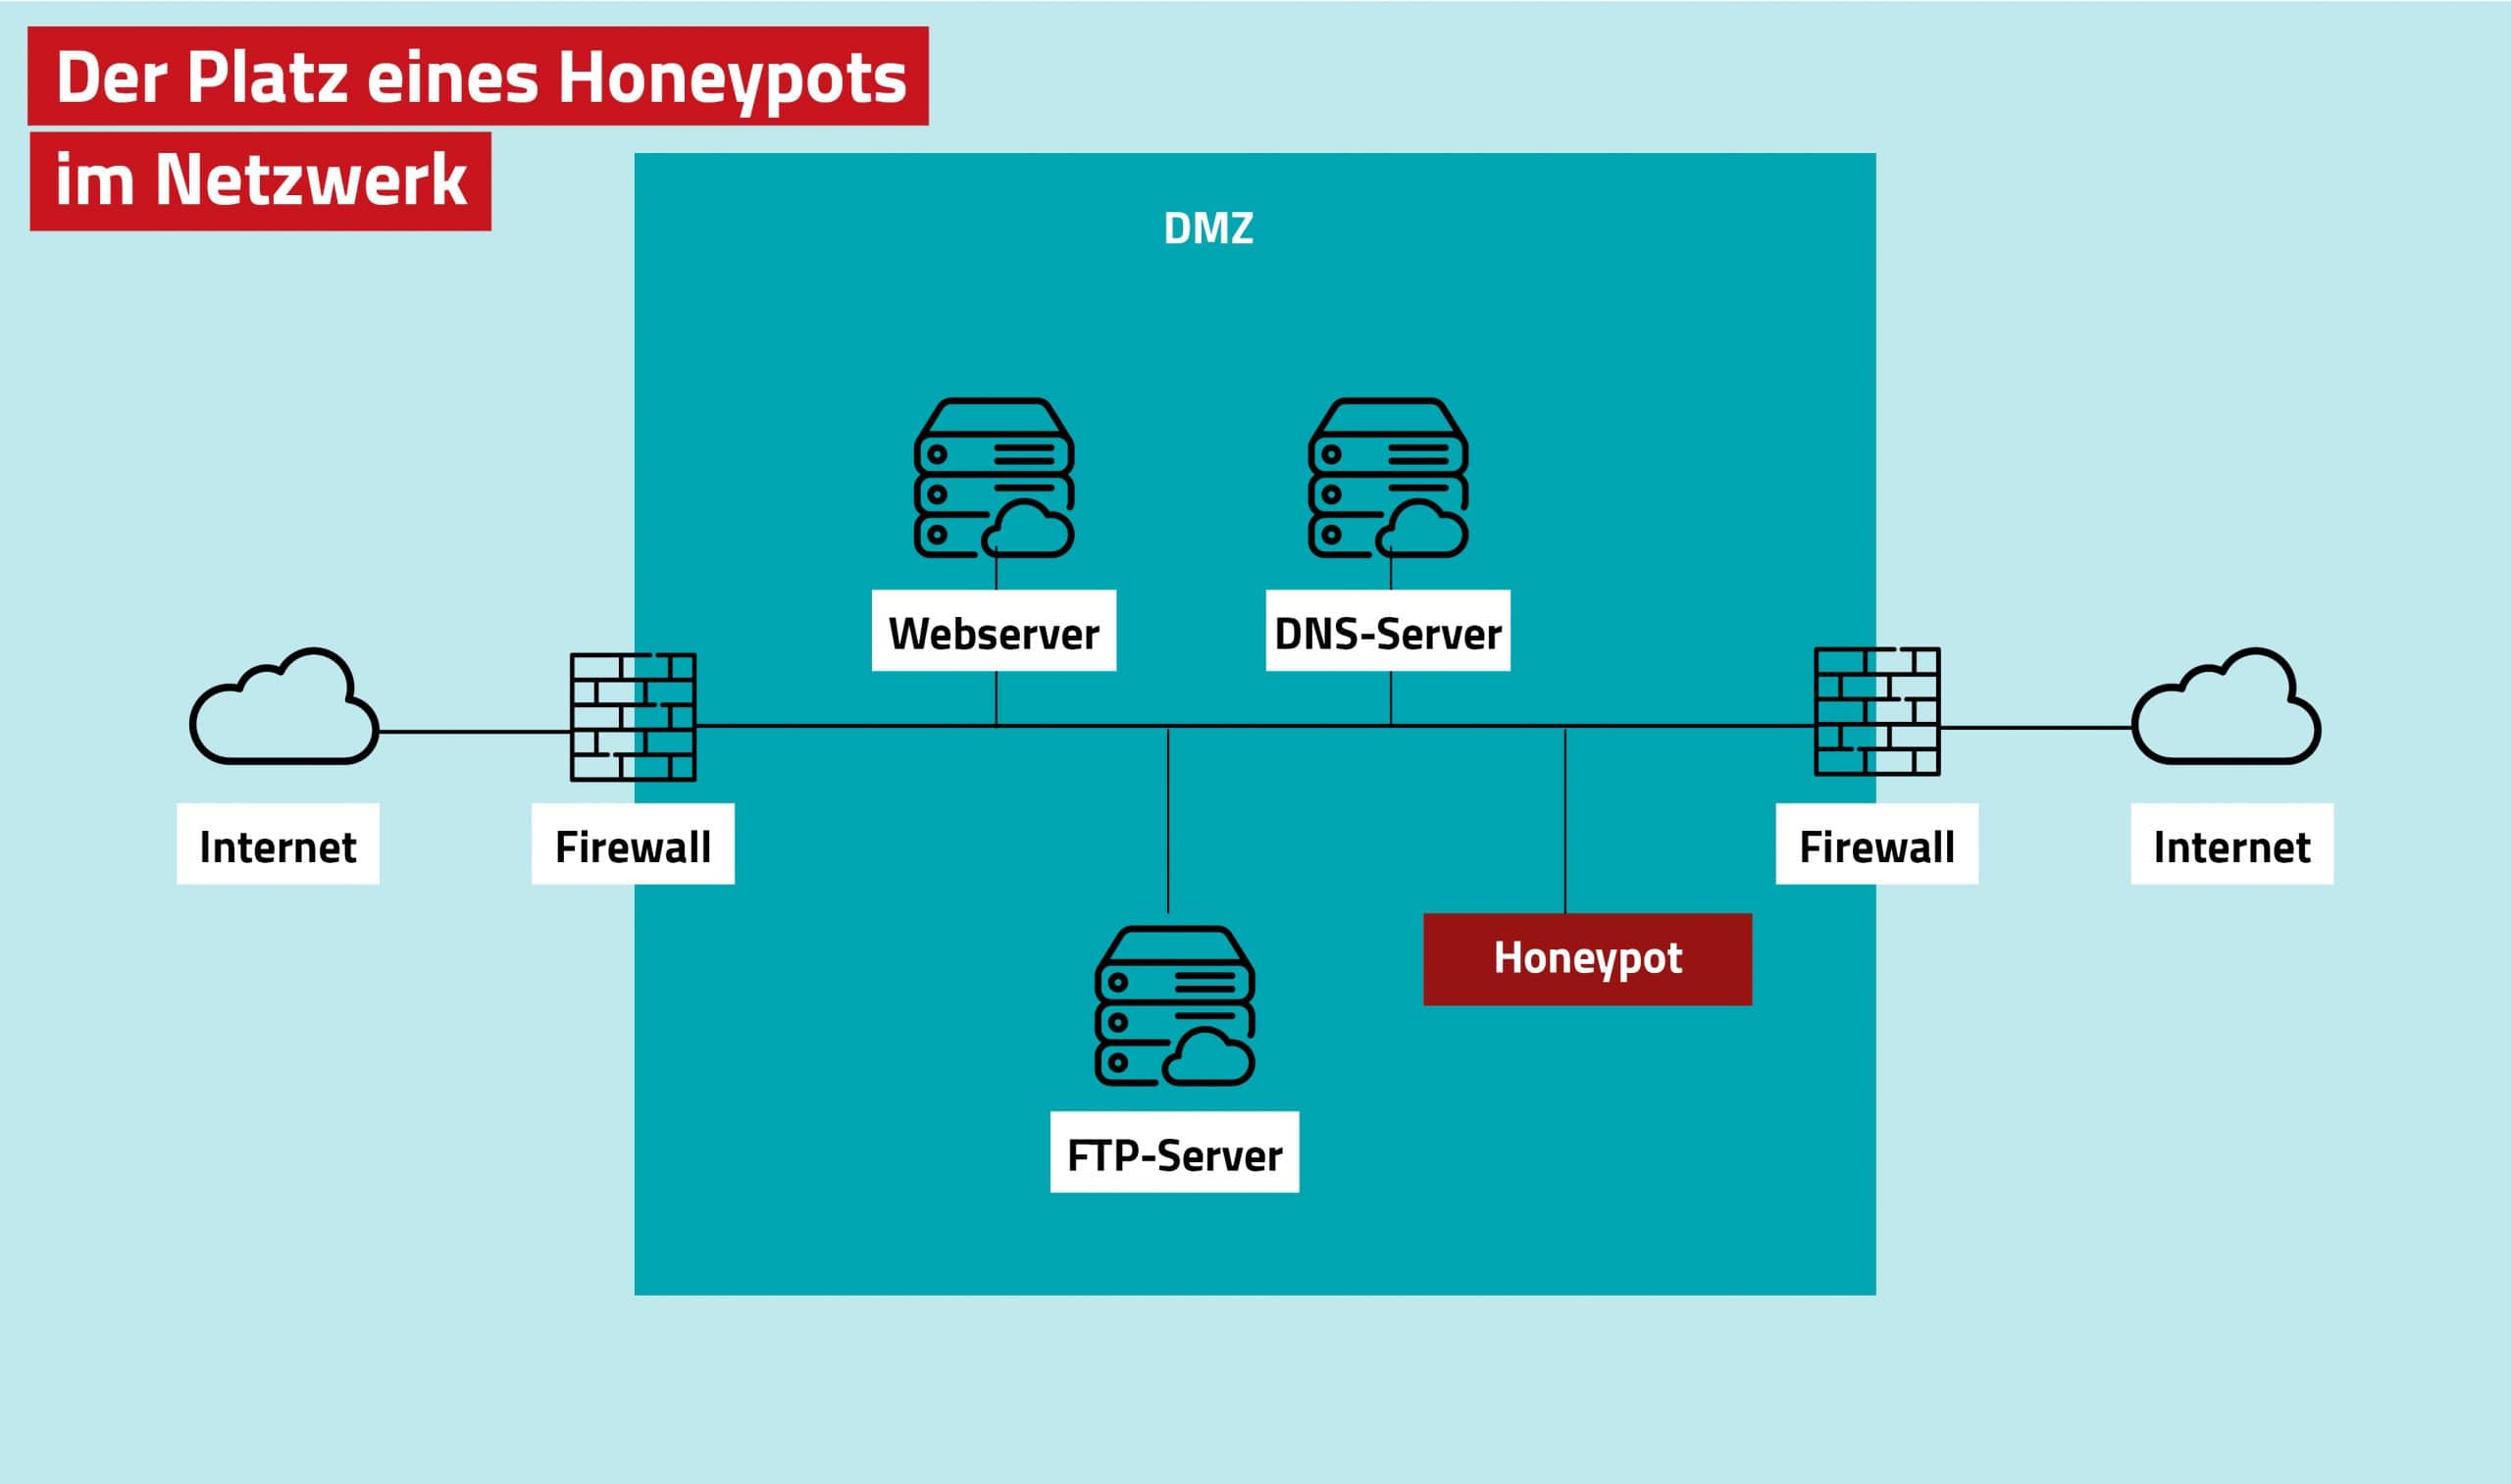 Der Platz eines Honeypots im Netzwerk